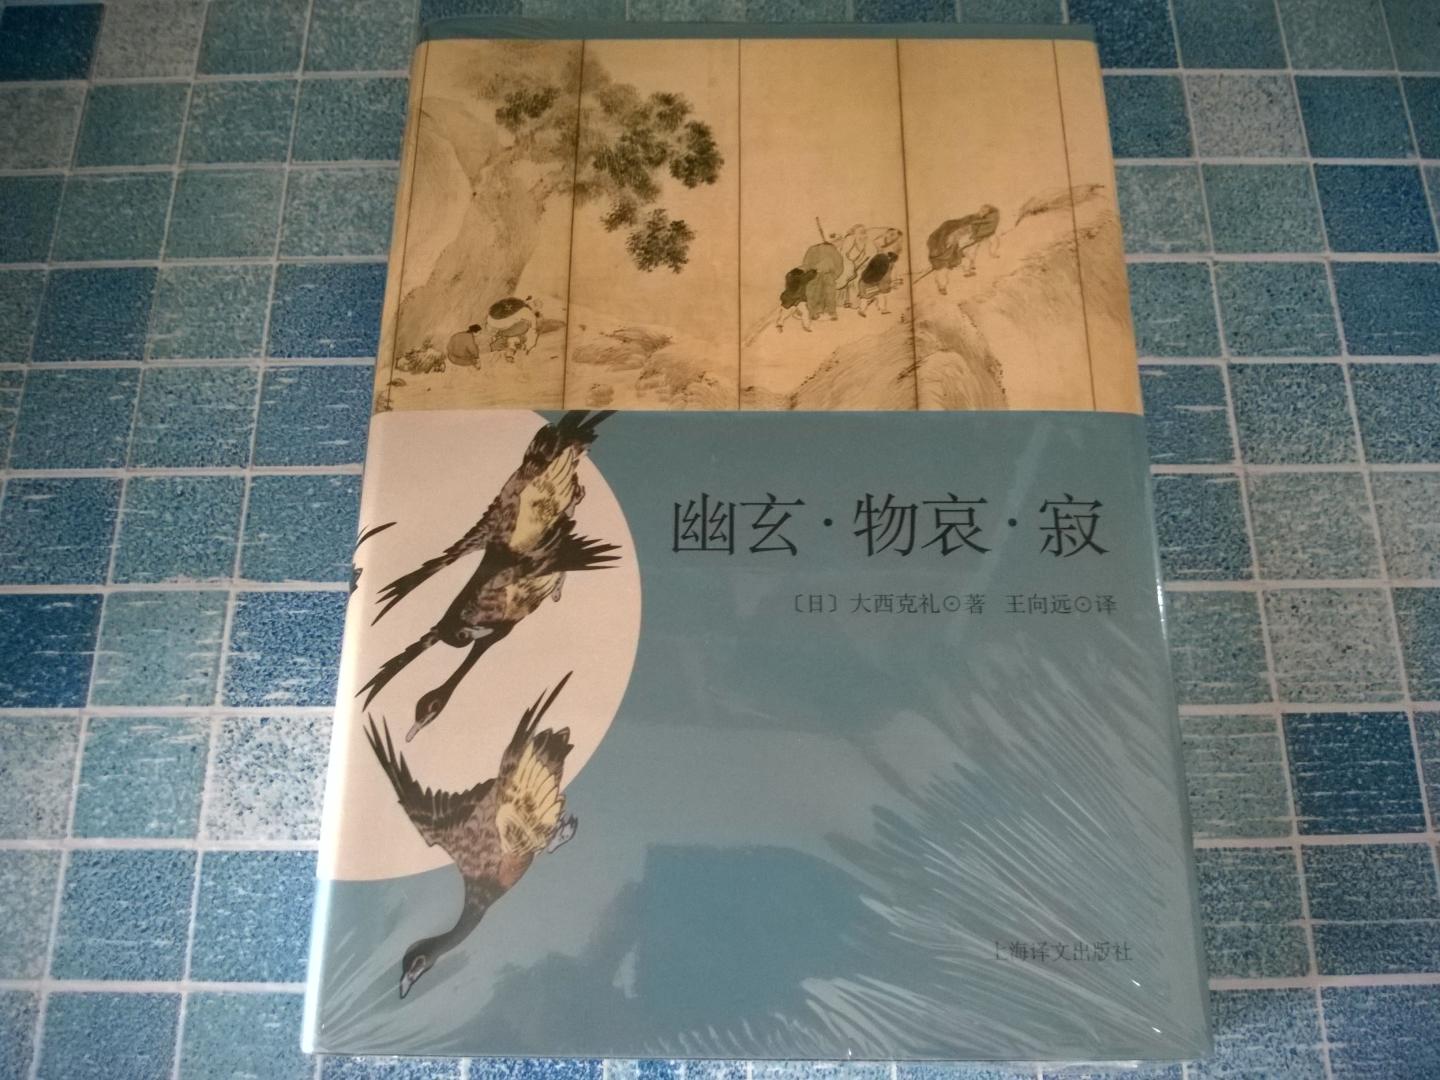 很不錯的一個譯本，書籍的裝幀也非常用心。此書對於研究日本美學非常有幫助。